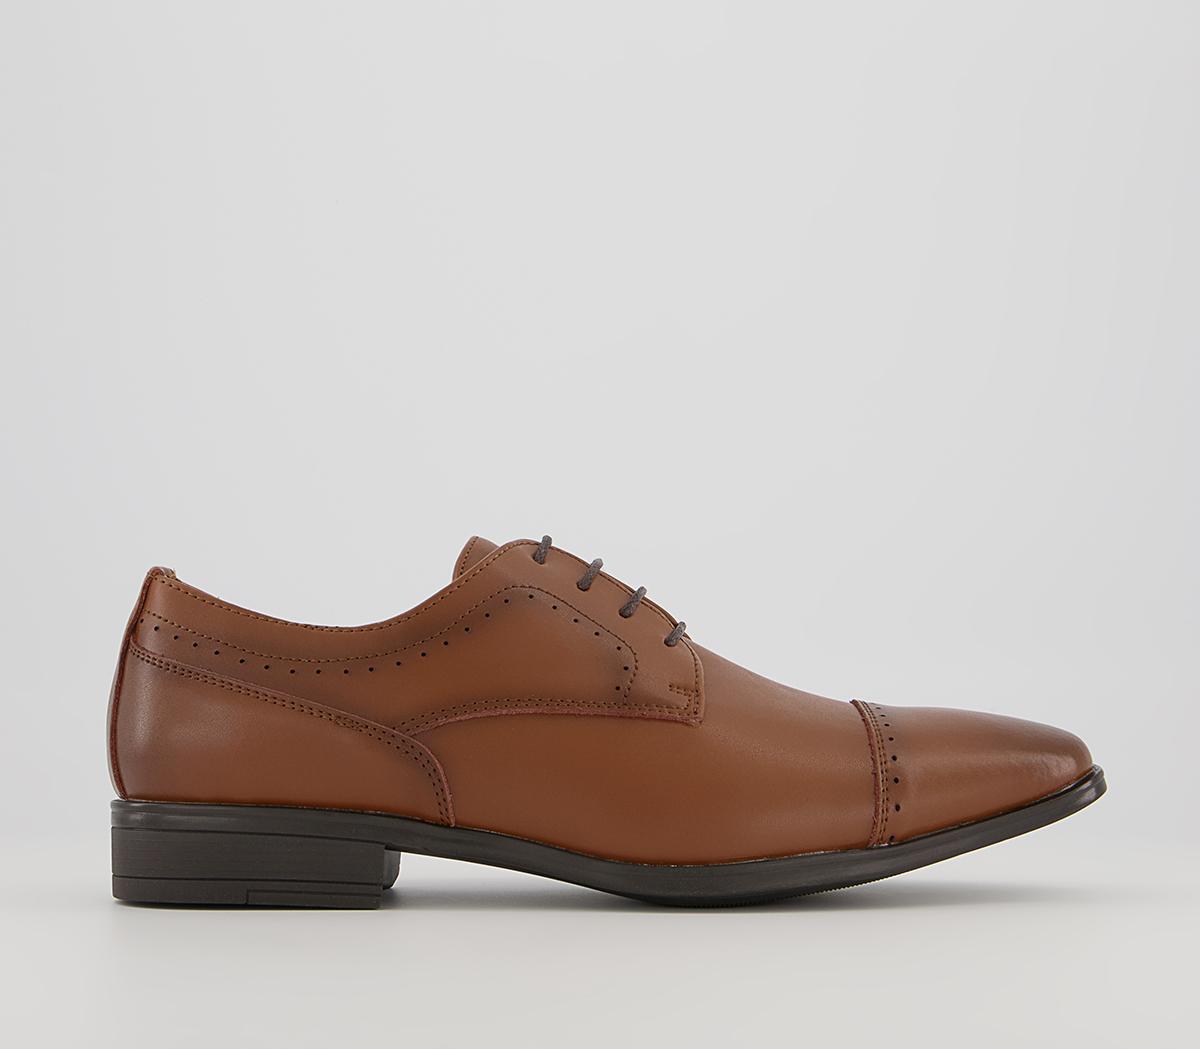 OFFICE Memoir 2 Toe Cap Derby Shoes Tan Leather - Men’s Smart Shoes